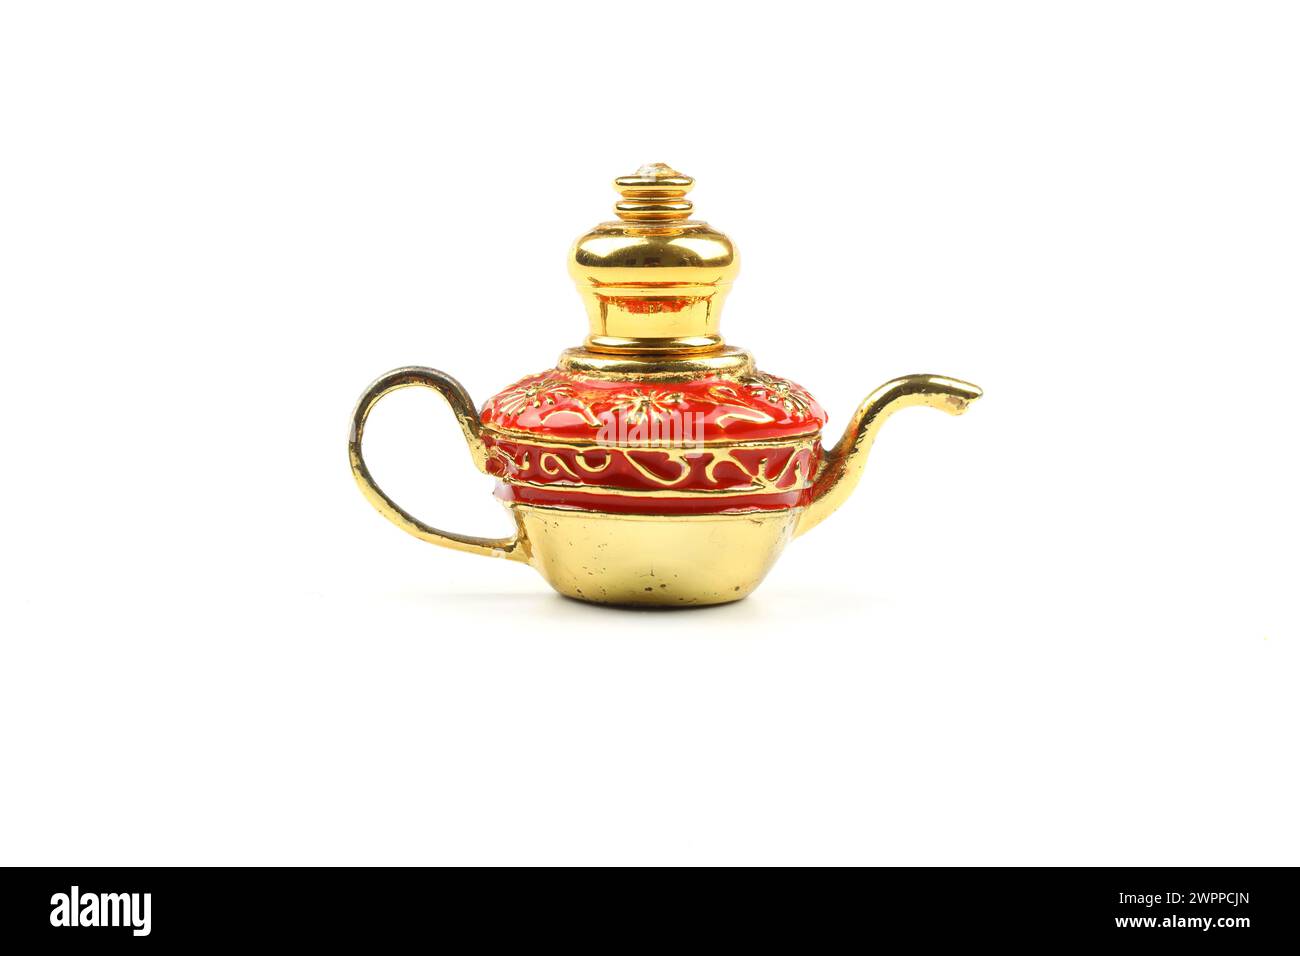 petite lampe à huile antique pour la décoration Banque D'Images